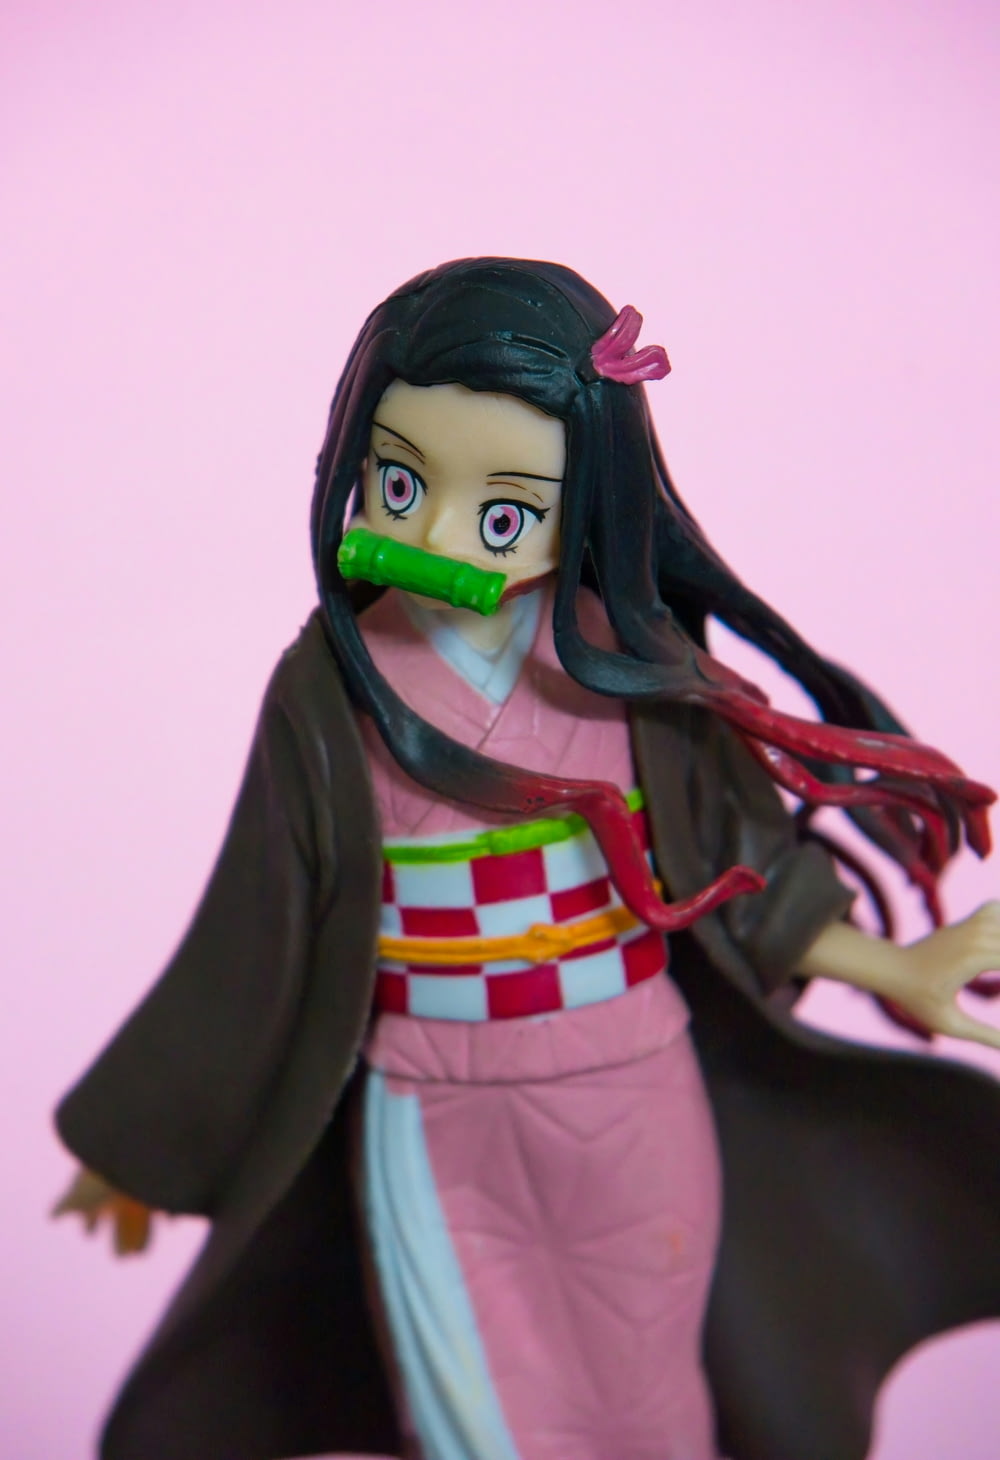 a figurine of a woman in a kimono